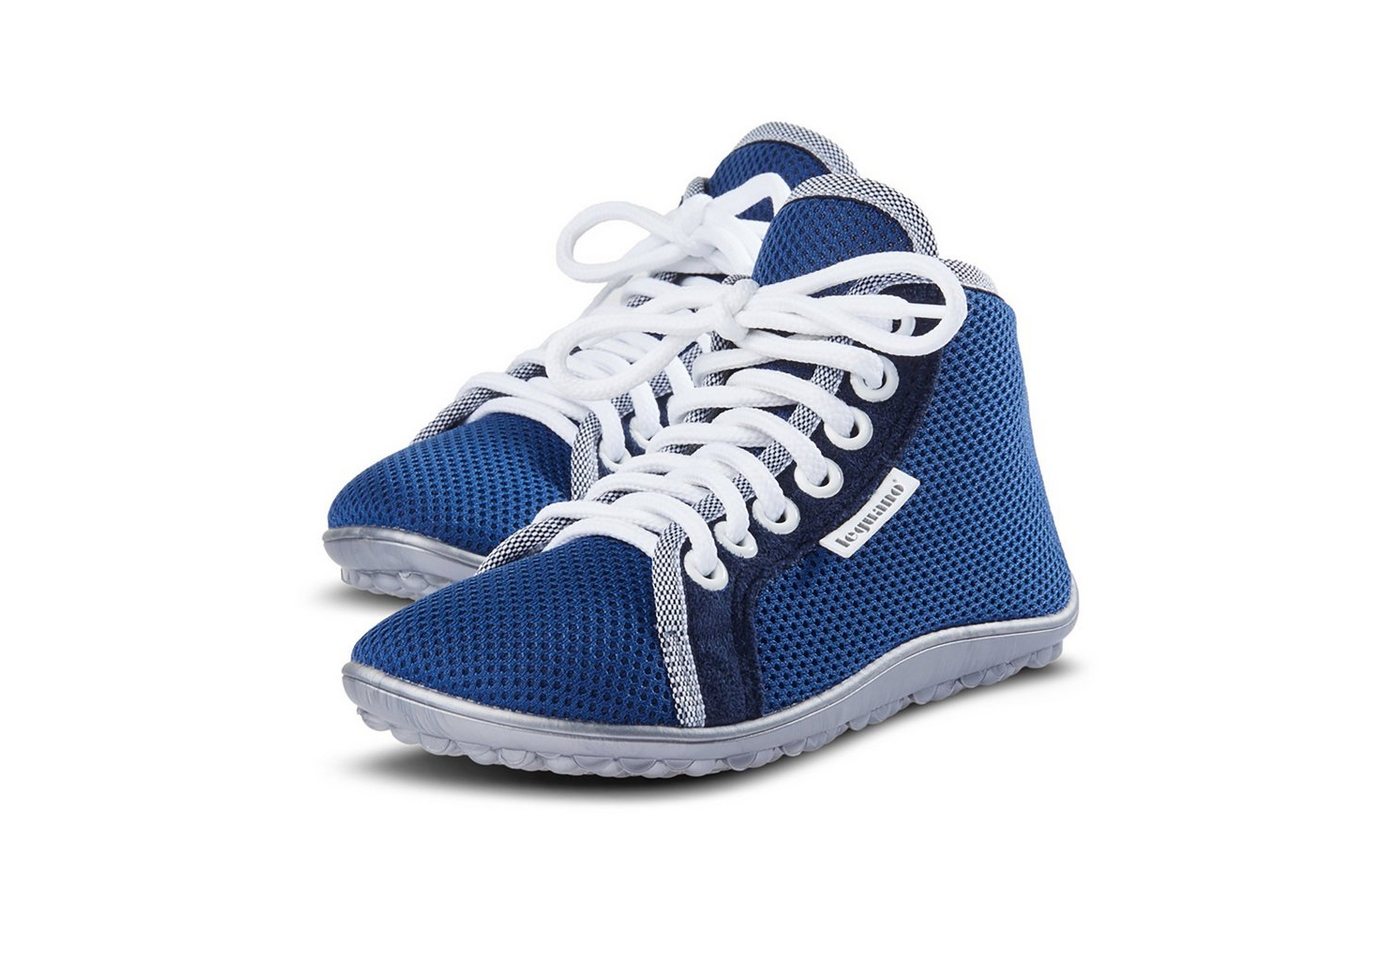 Leguano Aktiv Plus Blau - Kinder Lauflernschuh / Sneaker Barfußschuh von Leguano